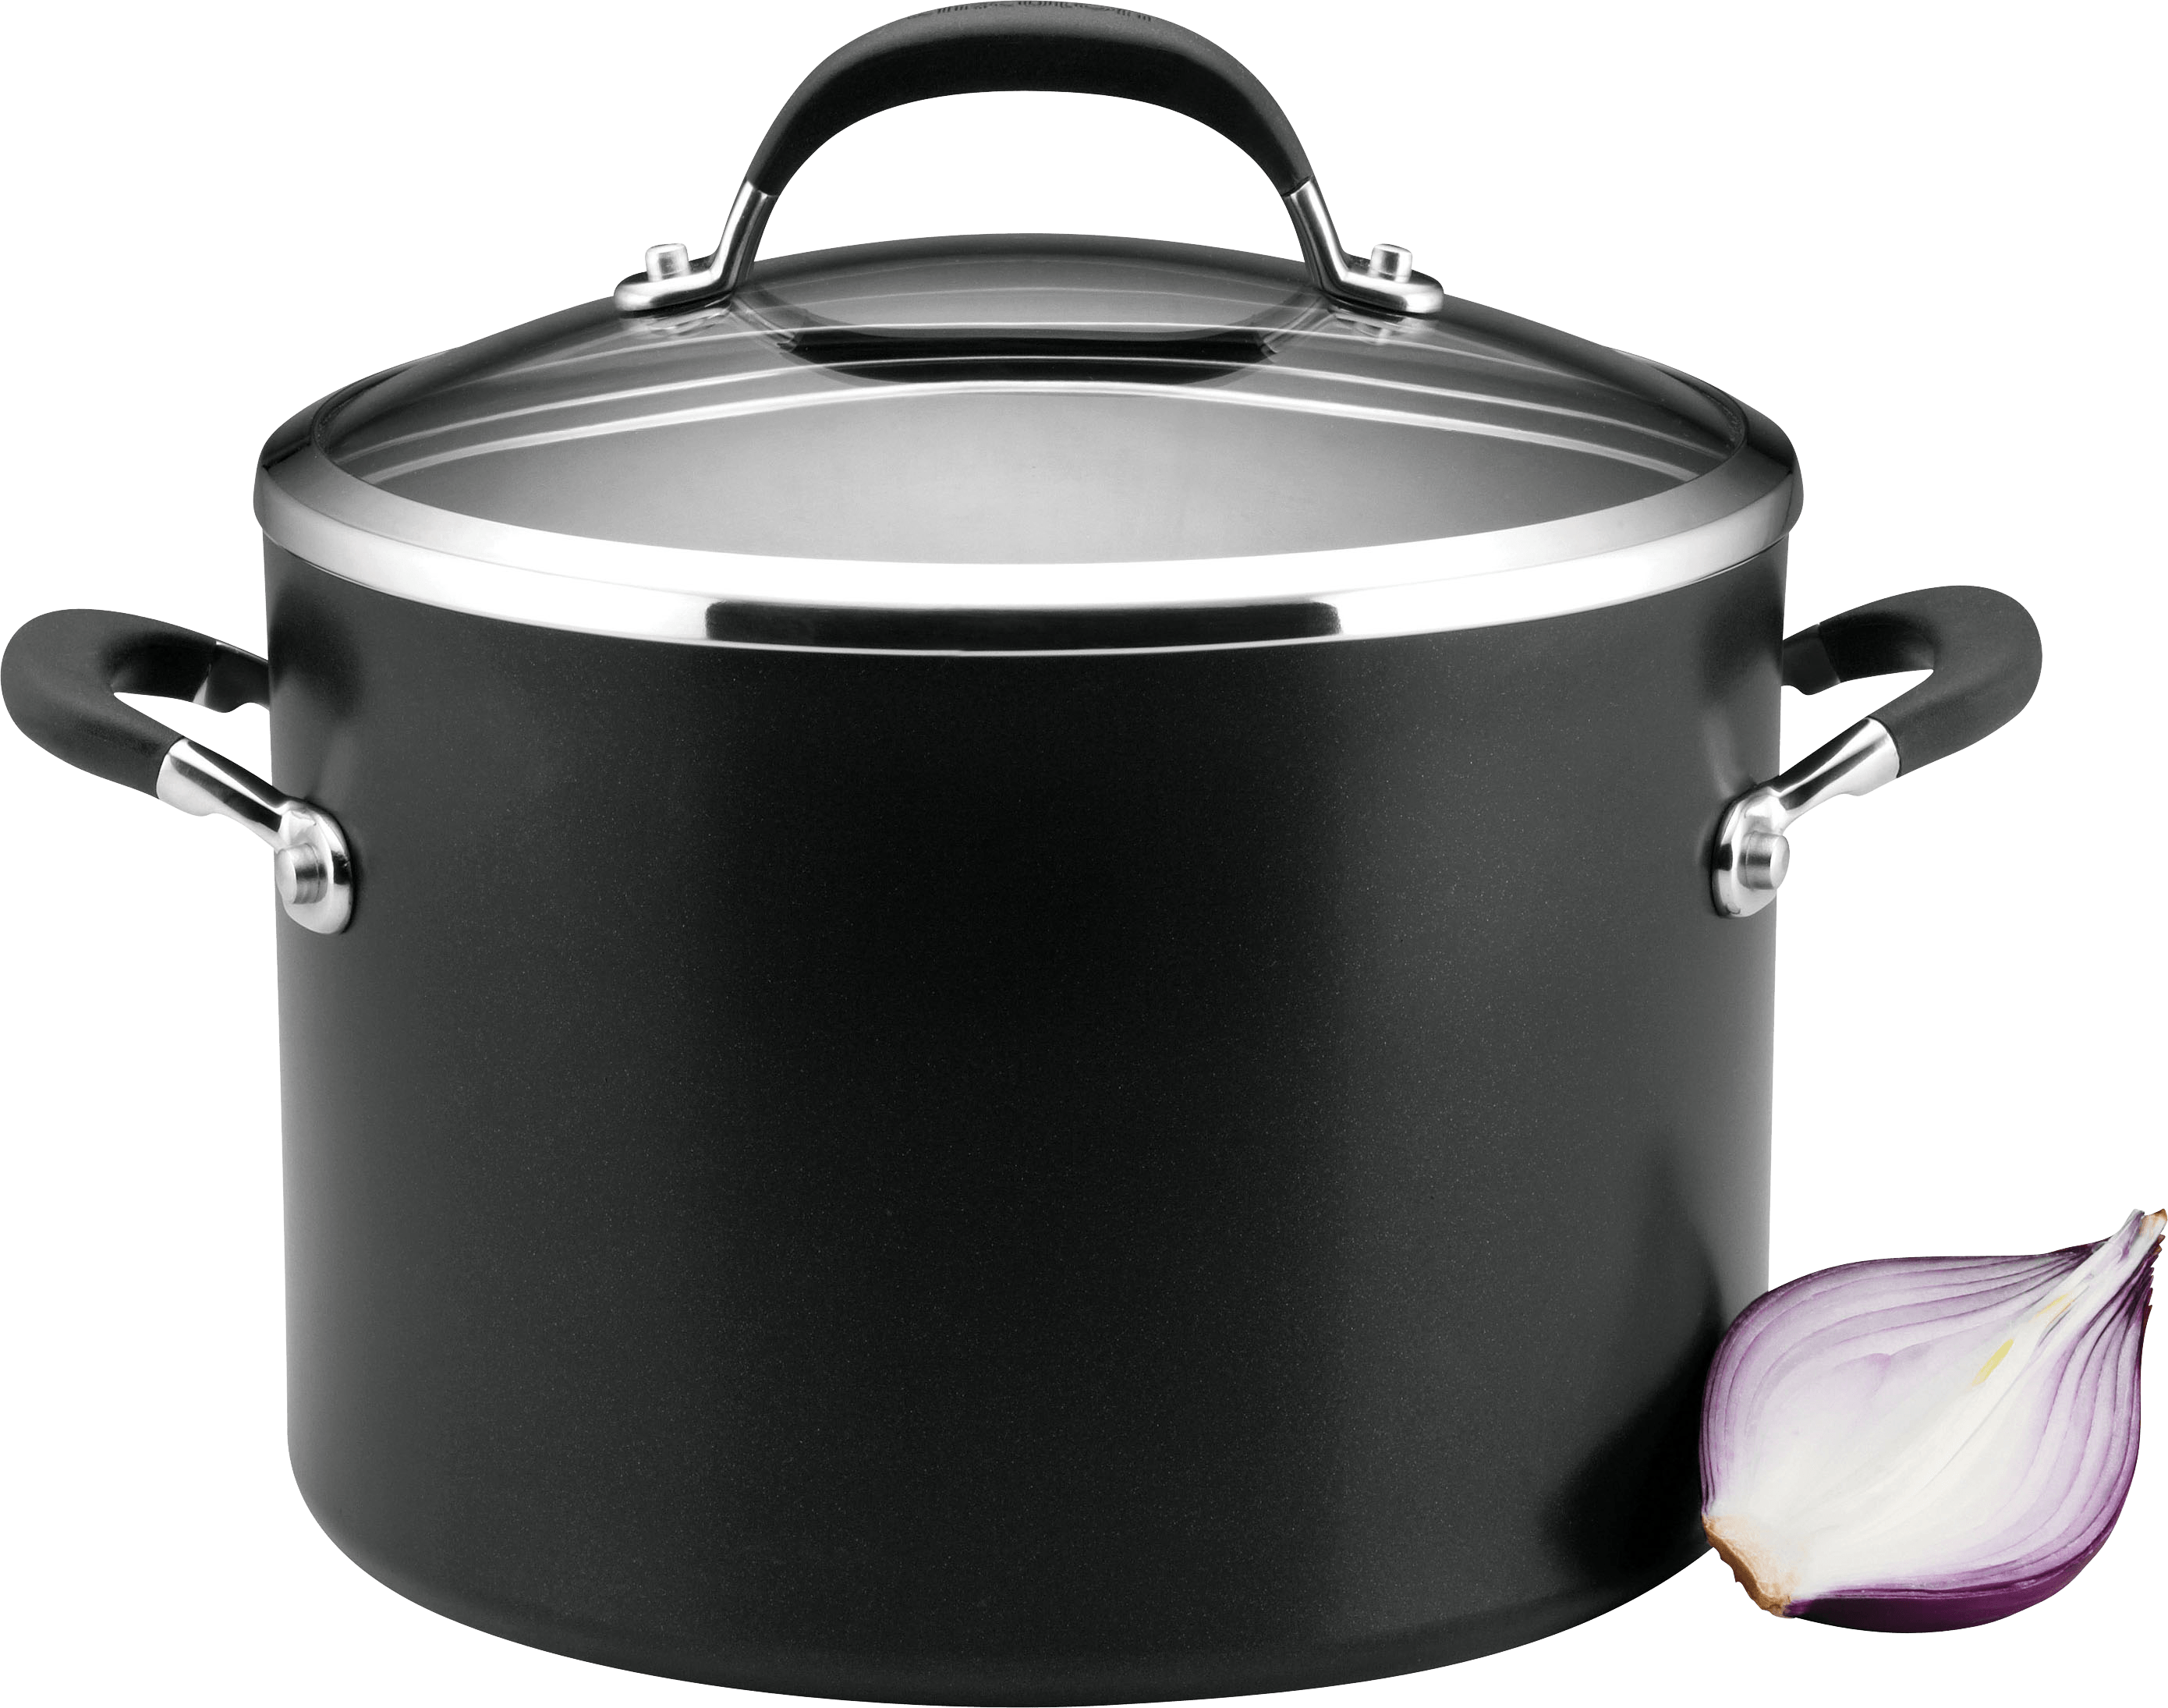 Cooking pan PNG image